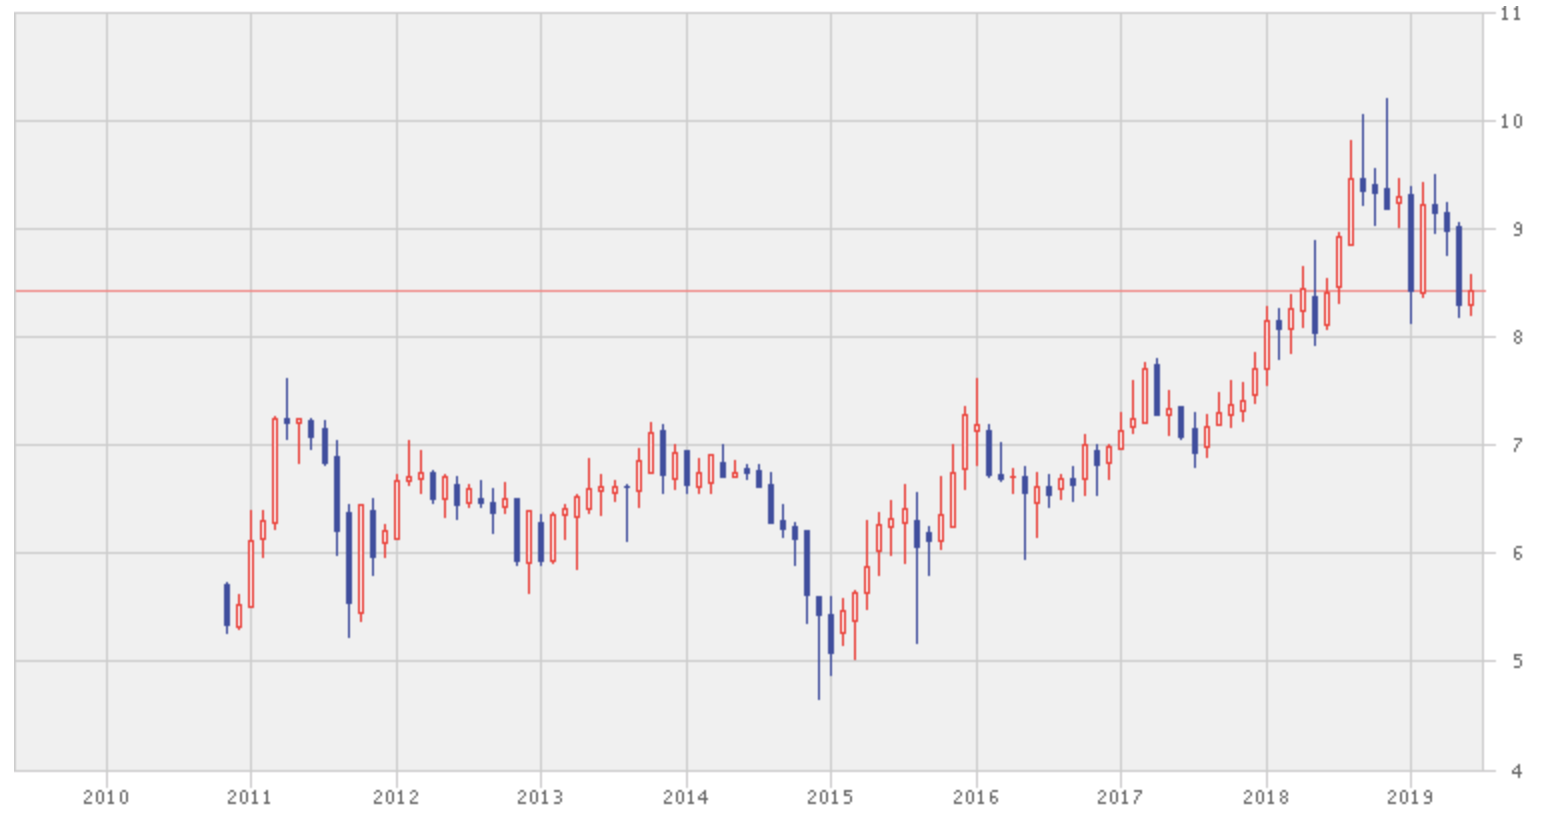 ペトロナス・ケミカルズ・グループの過去10年の株価推移